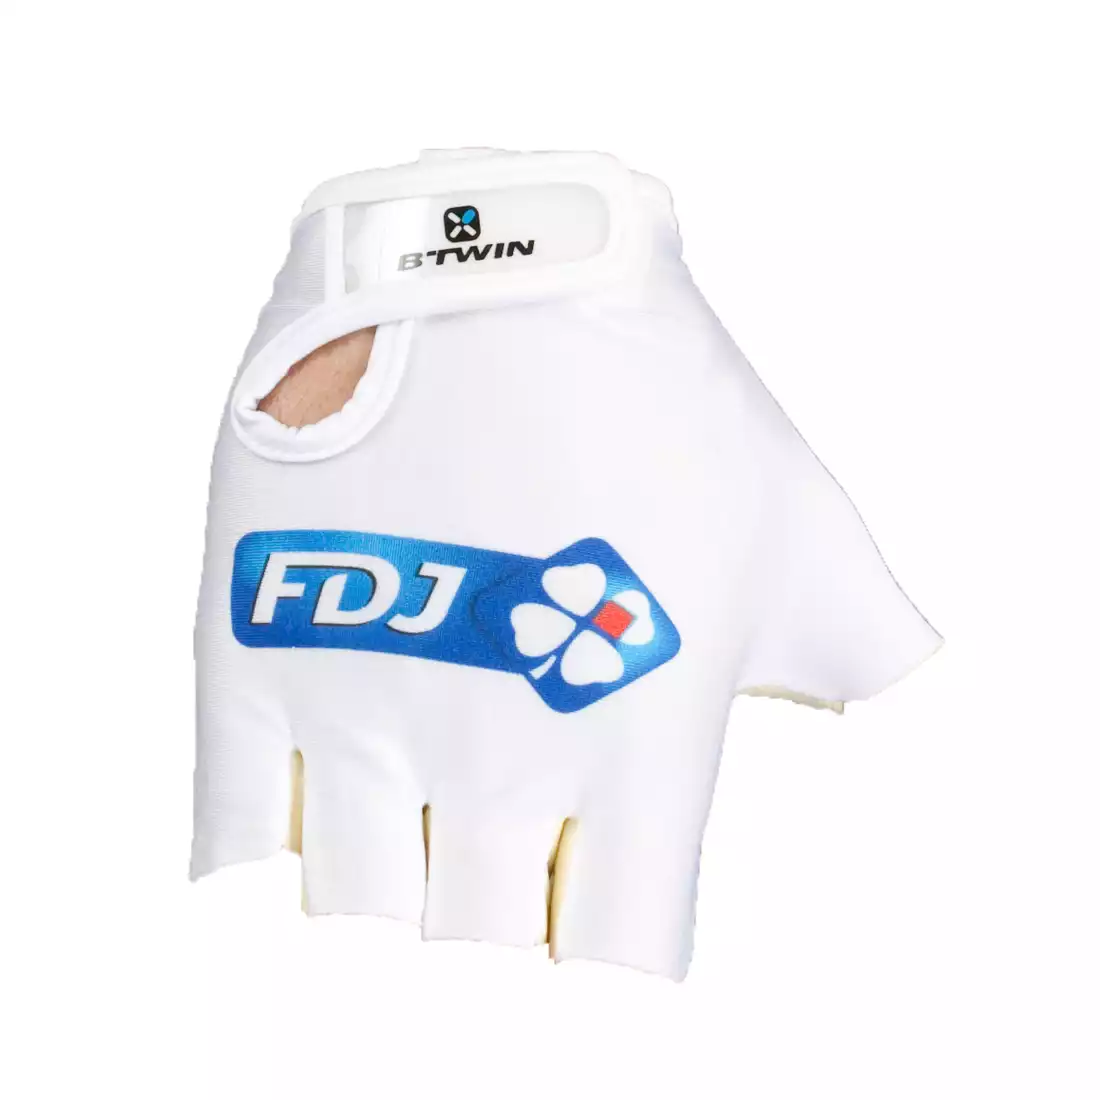 FDJ 2015 rękawiczki rowerowe